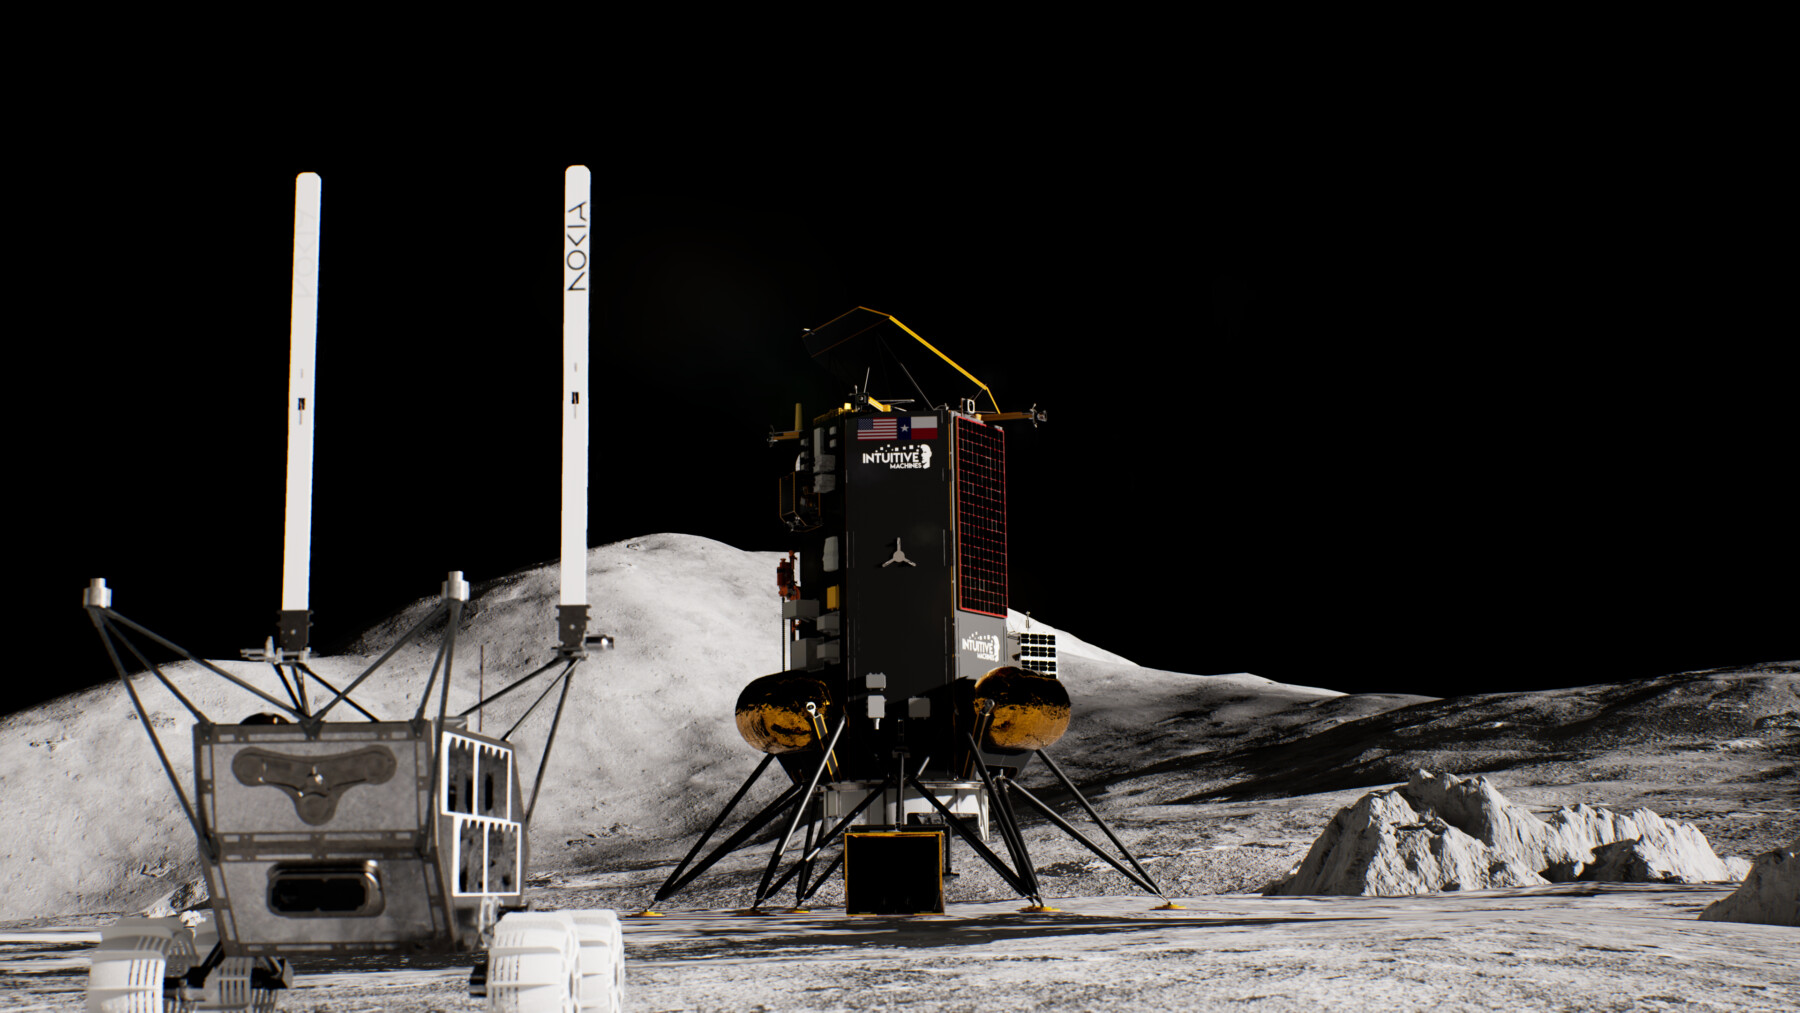 灰色岩石表面上，一部小型机器人车辆正驶离一架太空飞行器，背景是黑色的天空。